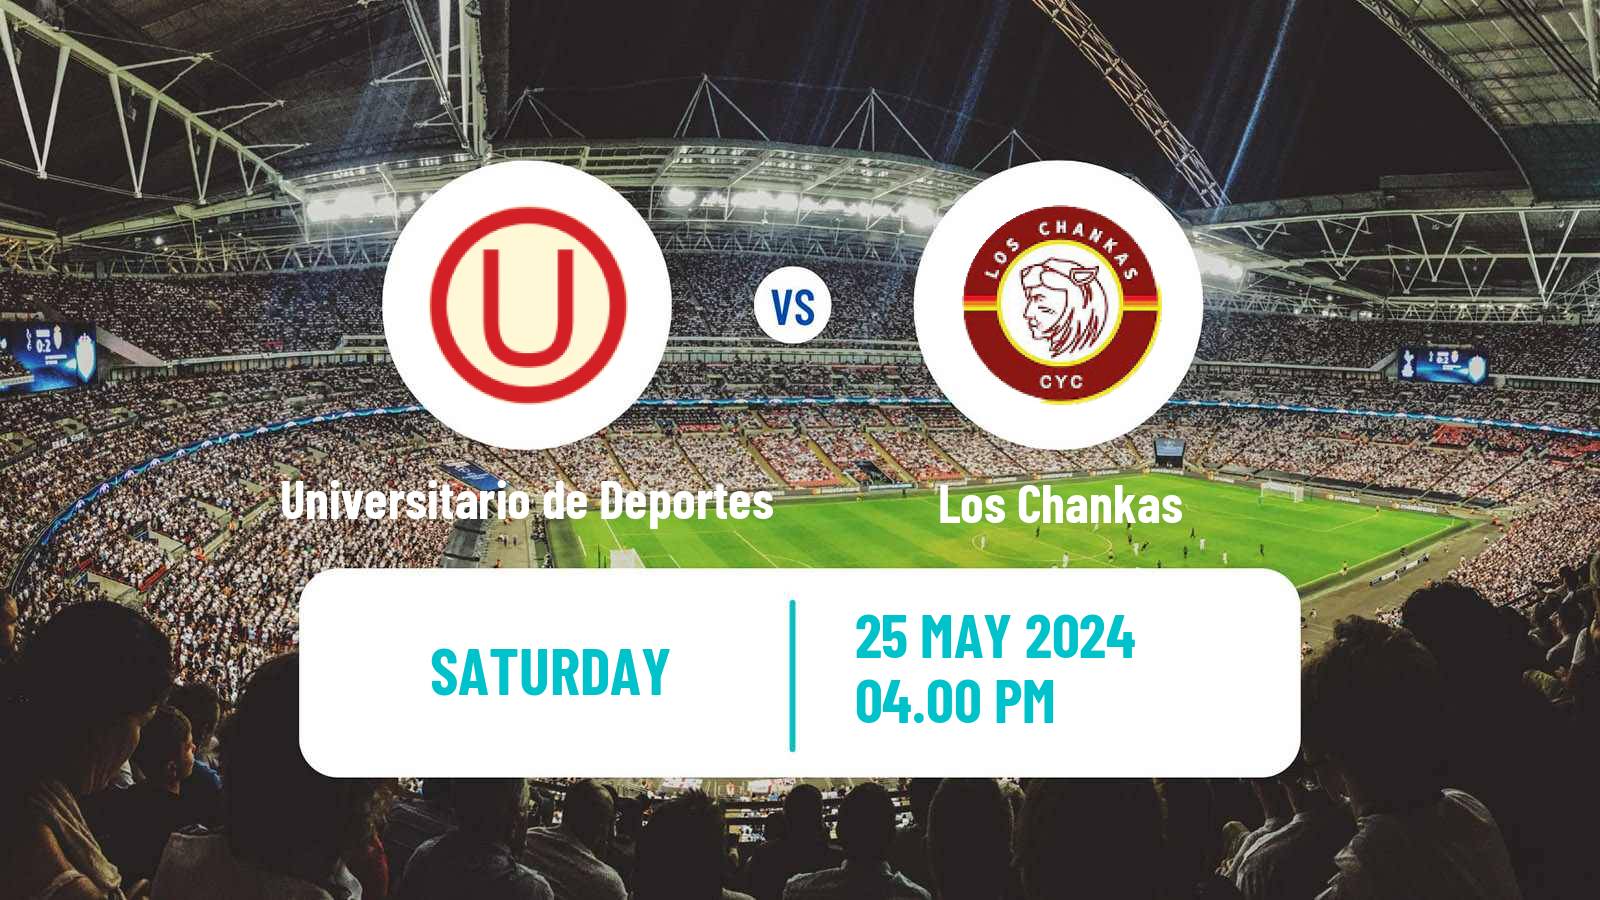 Soccer Peruvian Liga 1 Universitario de Deportes - Los Chankas